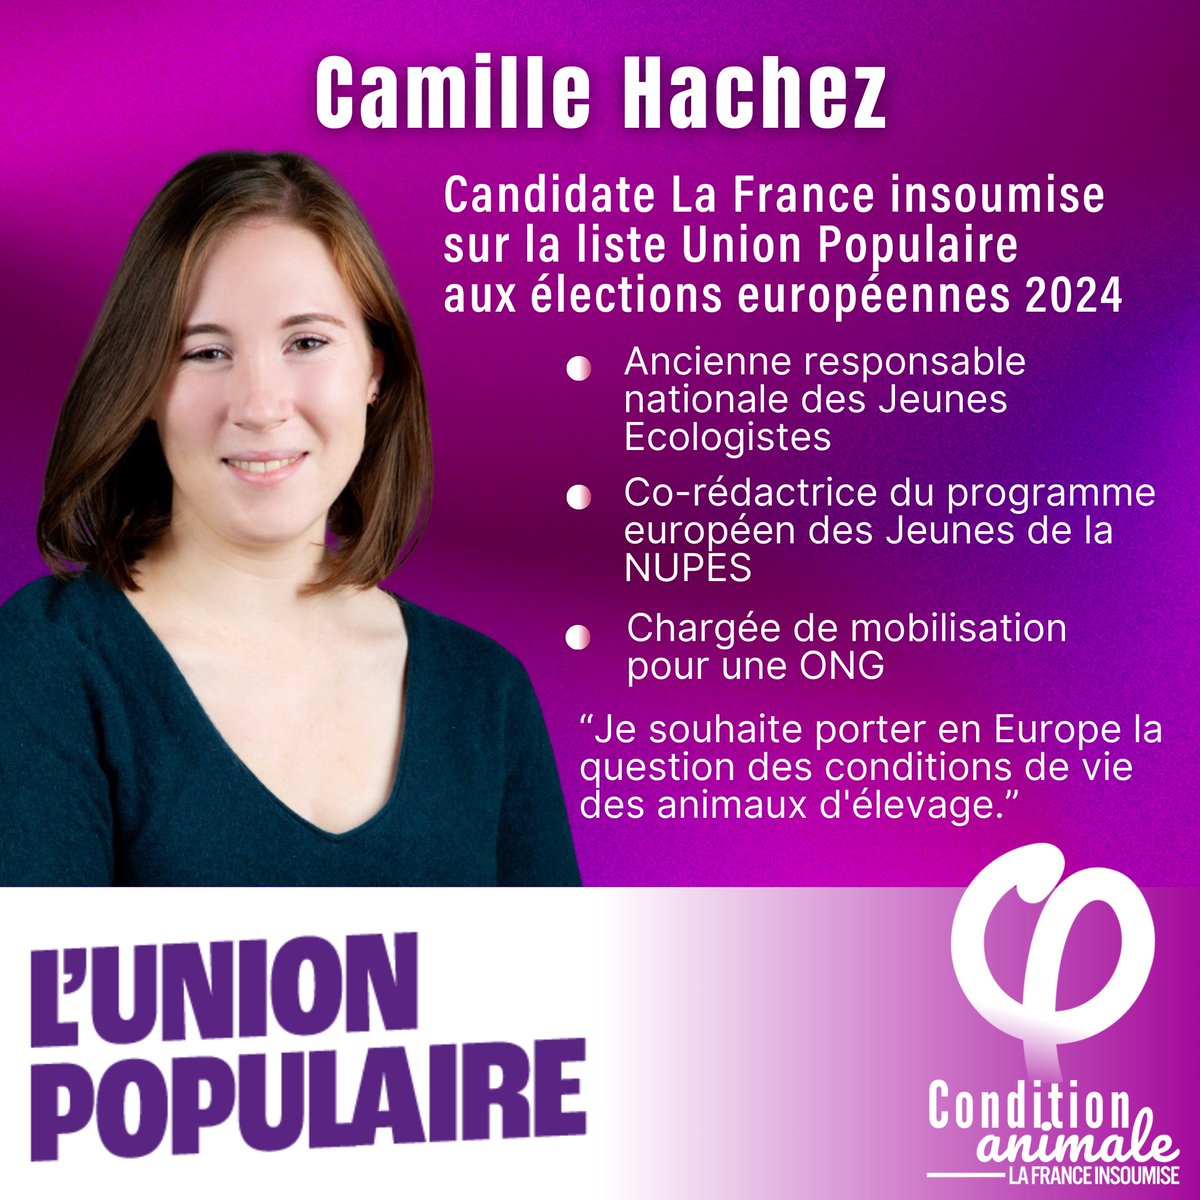 🐥 @Camille_Hachez candidate pour l’#UnionPopulaire aux #Europeennes2024 Ancienne responsable des jeunes écologistes, elle souhaite porter en Europe la question des conditions de vie des #animaux d’élevage. Nous sommes ravi.es de la compter sur notre liste !